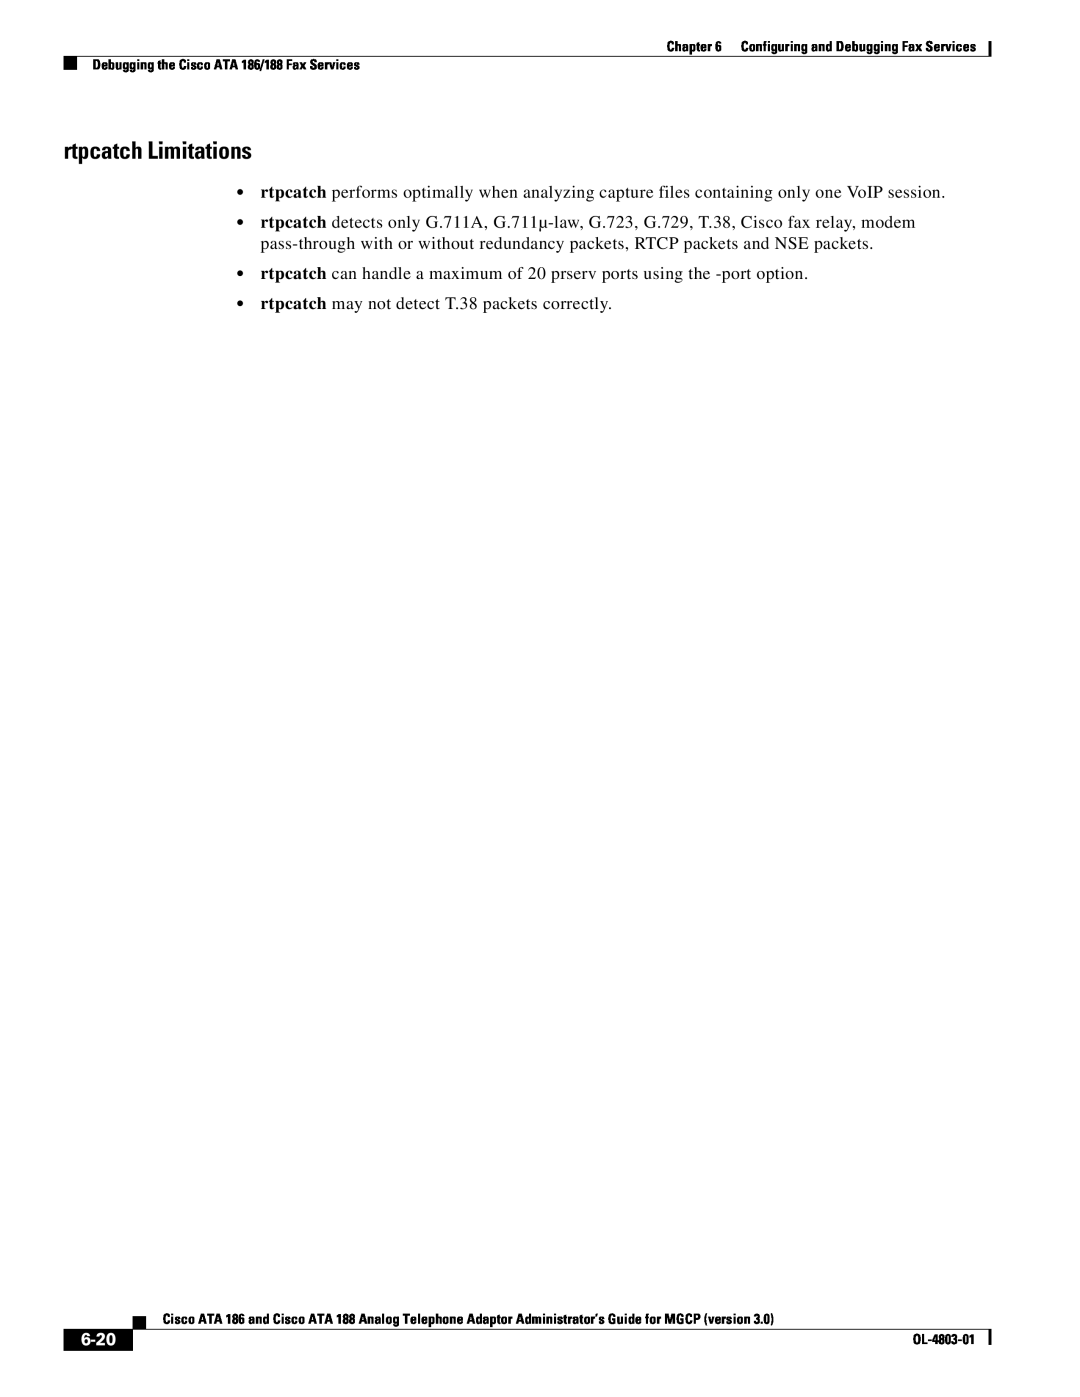 Cisco Systems ATA 186 manual rtpcatch Limitations, 6-20 